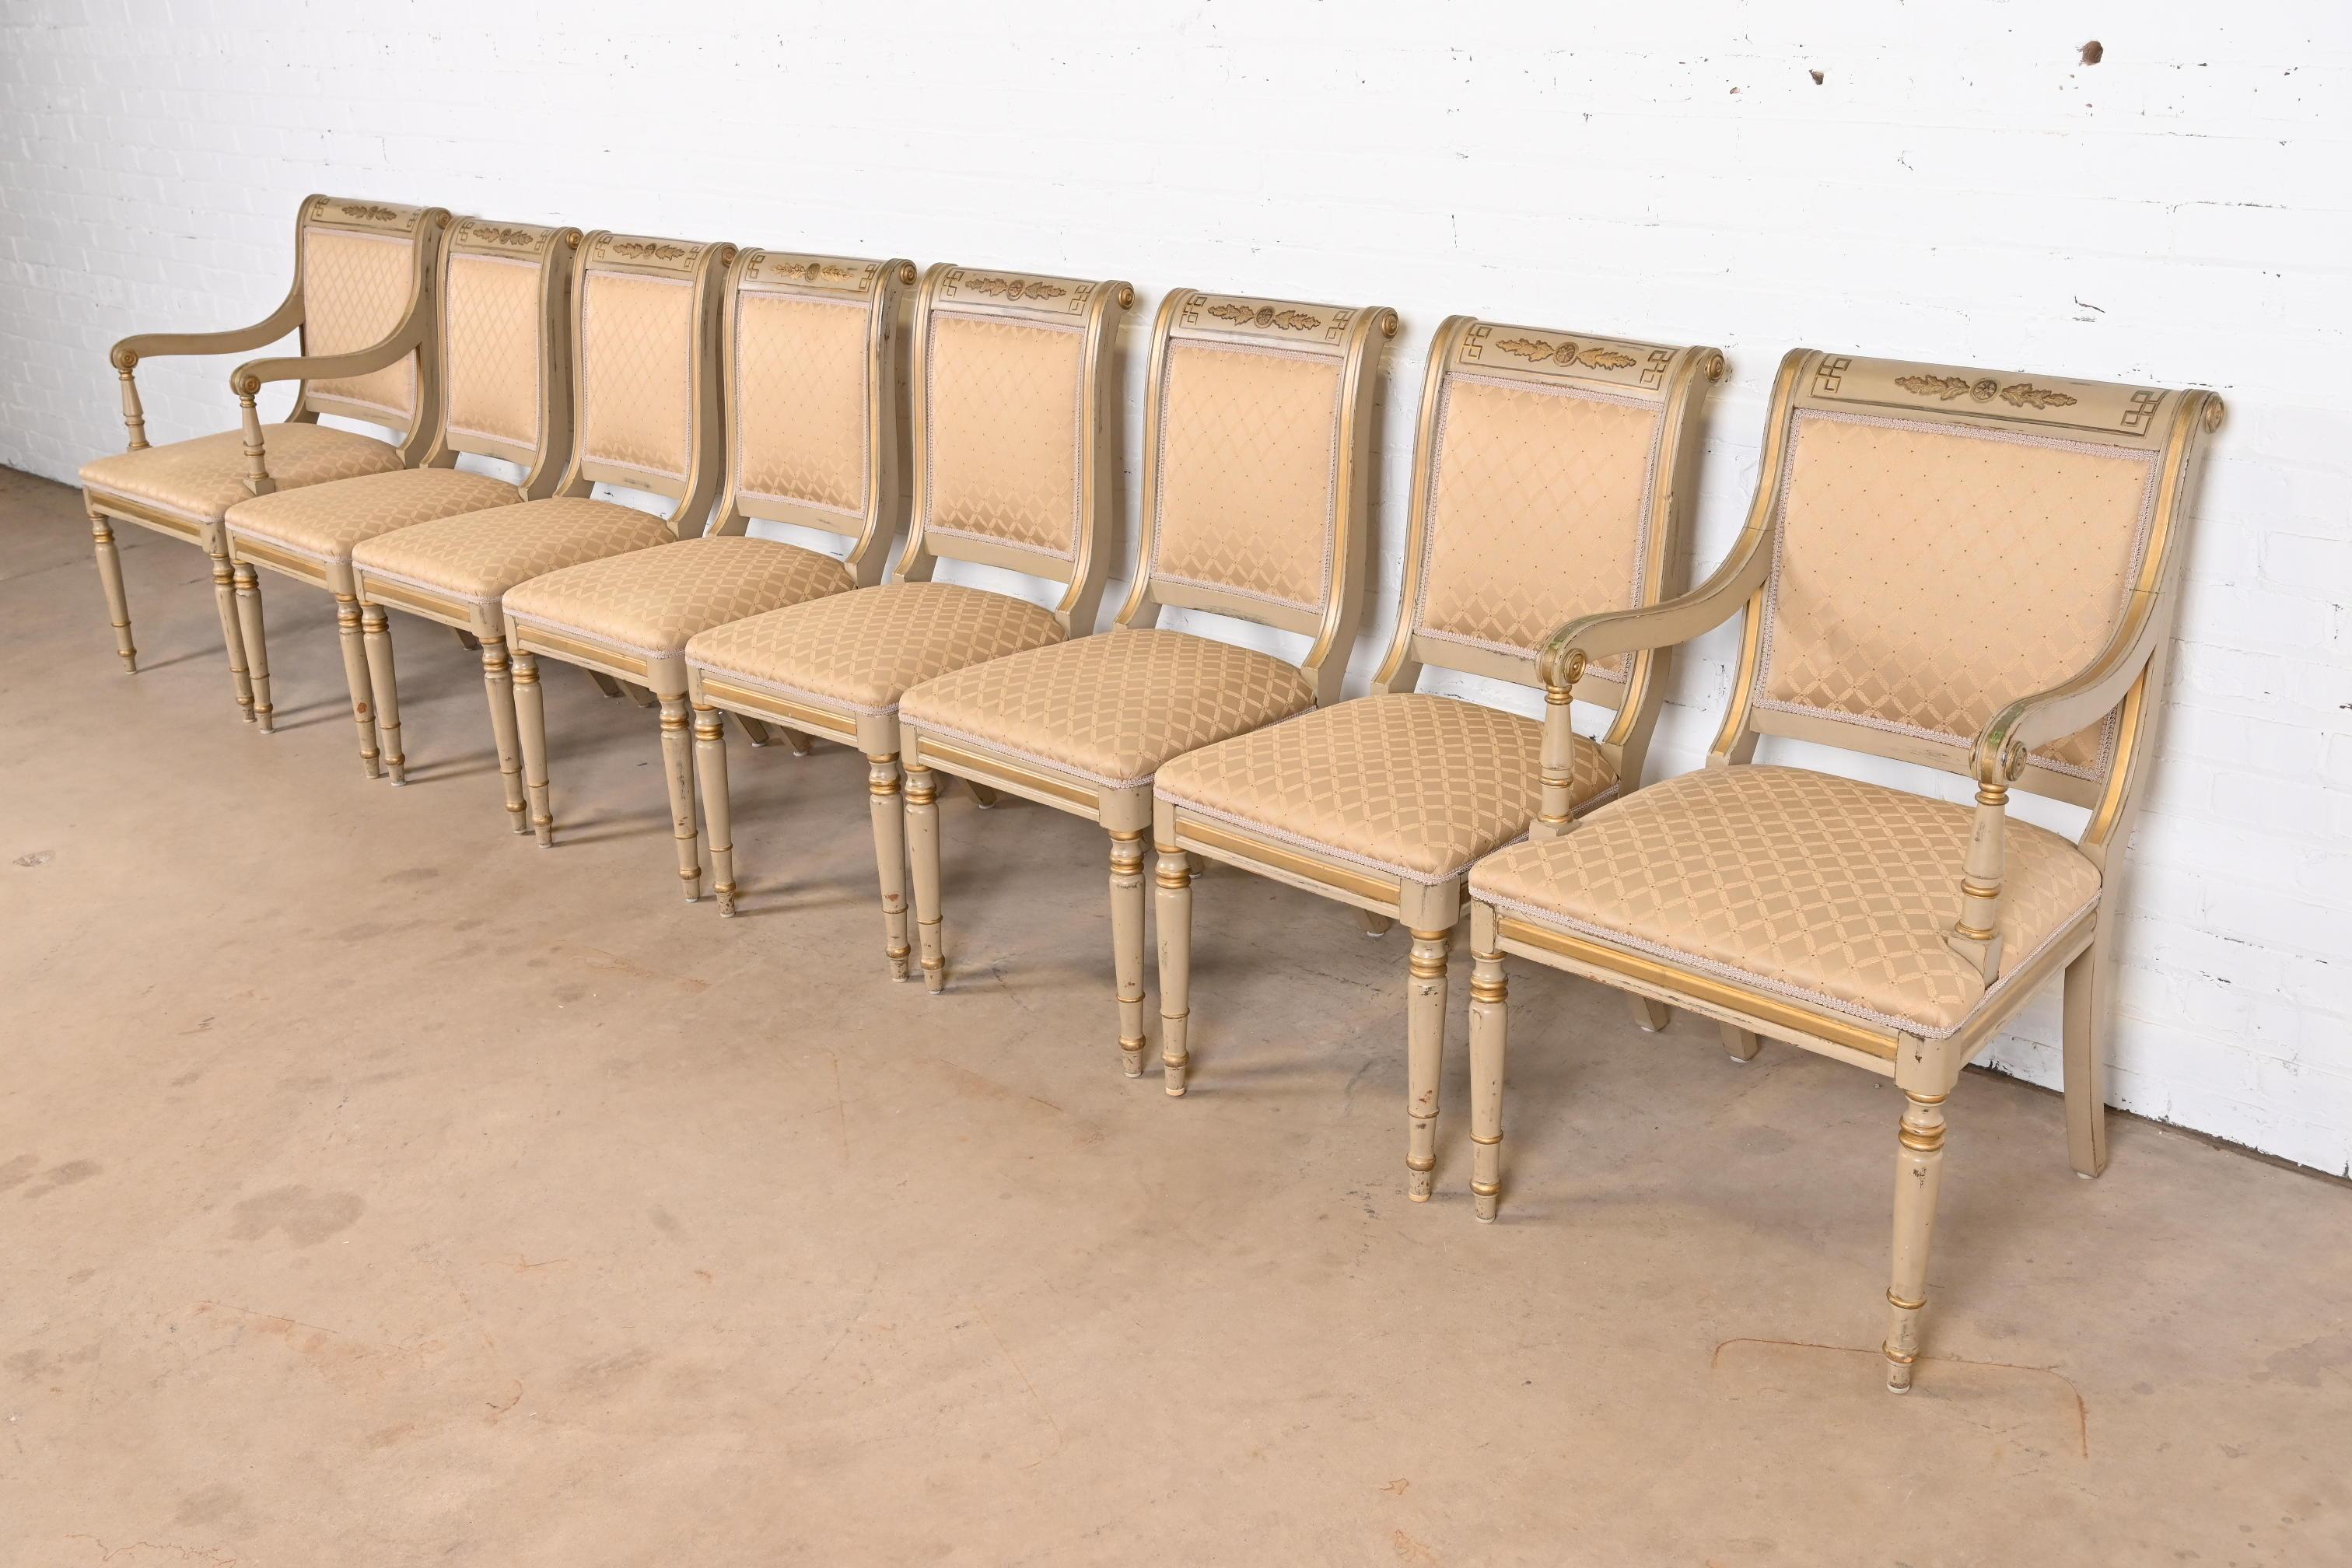 Magnifique ensemble de huit chaises de salle à manger de style néoclassique ou Régence française Louis XVI

À la manière des meubles Baker

Fin du 20e siècle

Montures en acajou sculpté, peint à la main et doré à l'or fin, avec sièges et dossiers